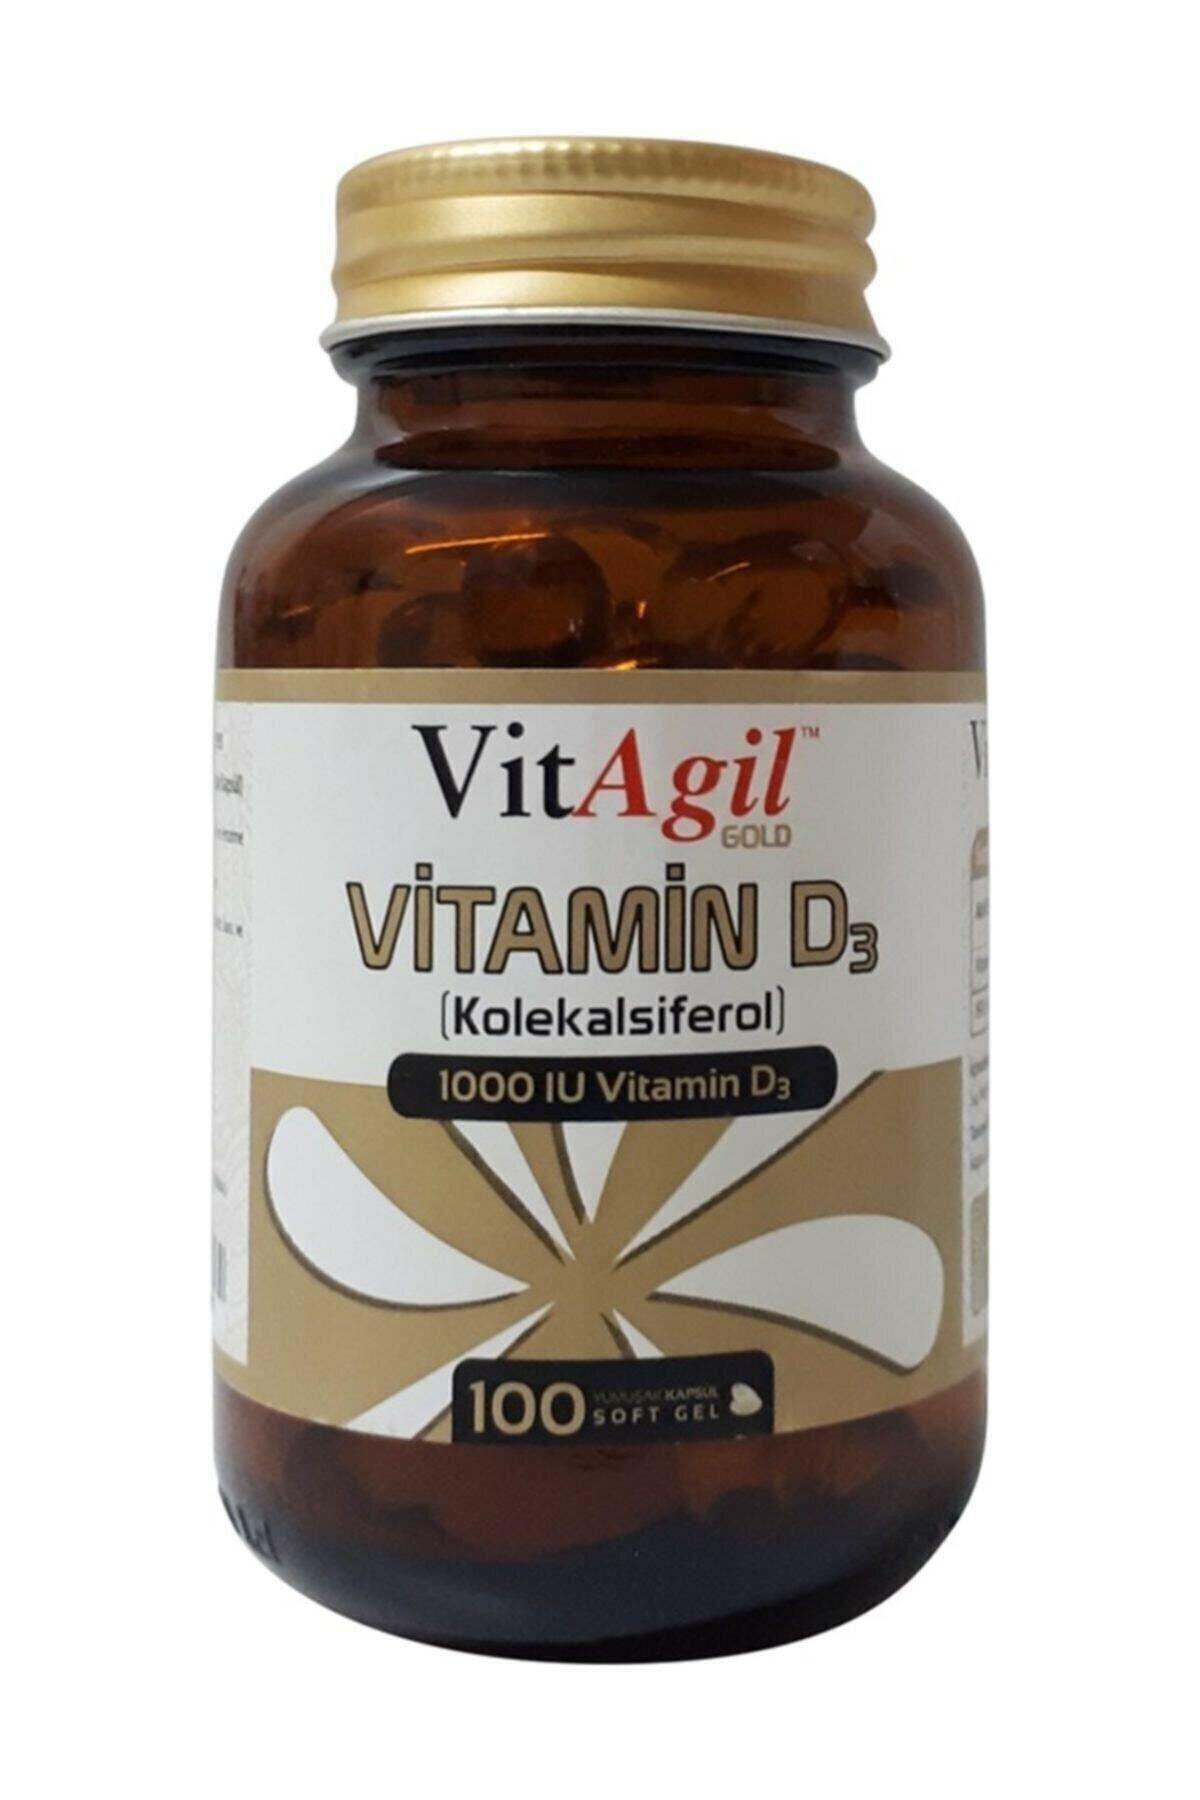 Allergo Vitagil Gold Vitamin 1000 Iu D3 100 Softjel